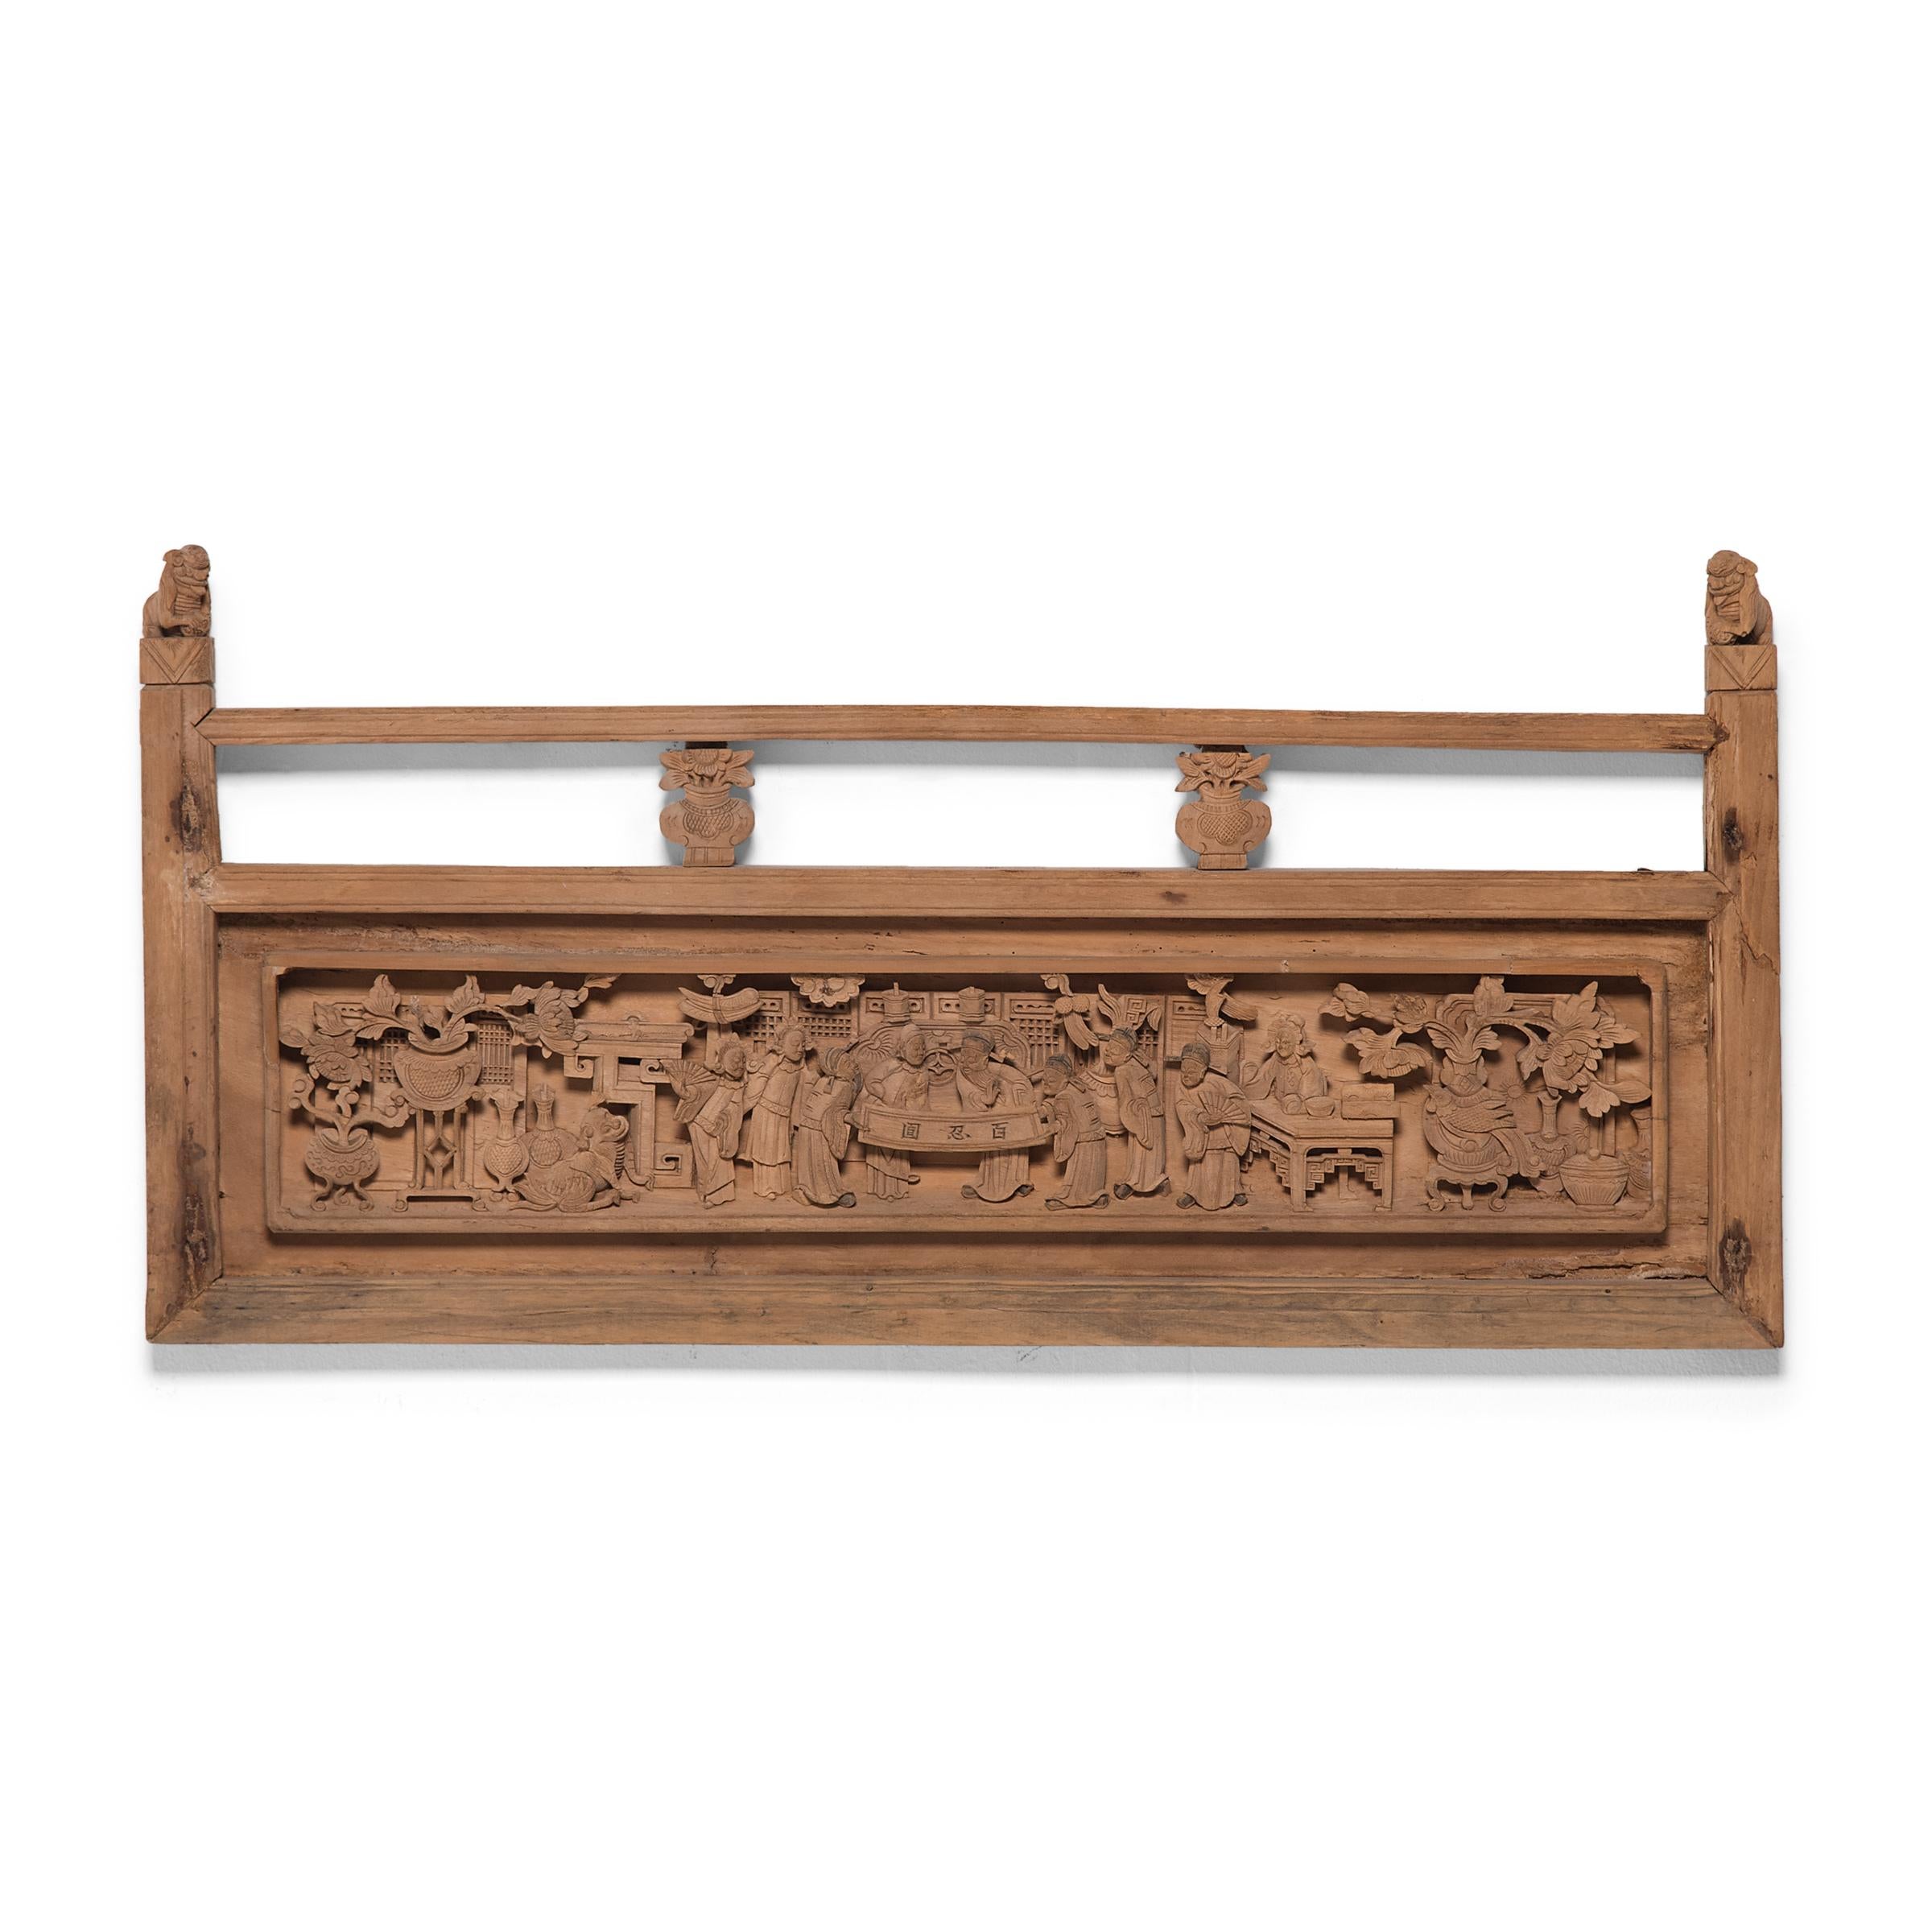 Ces panneaux en bois sculpté faisaient autrefois partie de la balustrade d'un grand lit de jour ou d'un lit à baldaquin de la dynastie Qing. Réalisé par des experts, le panneau présente une magnifique sculpture en relief avec des détails complexes